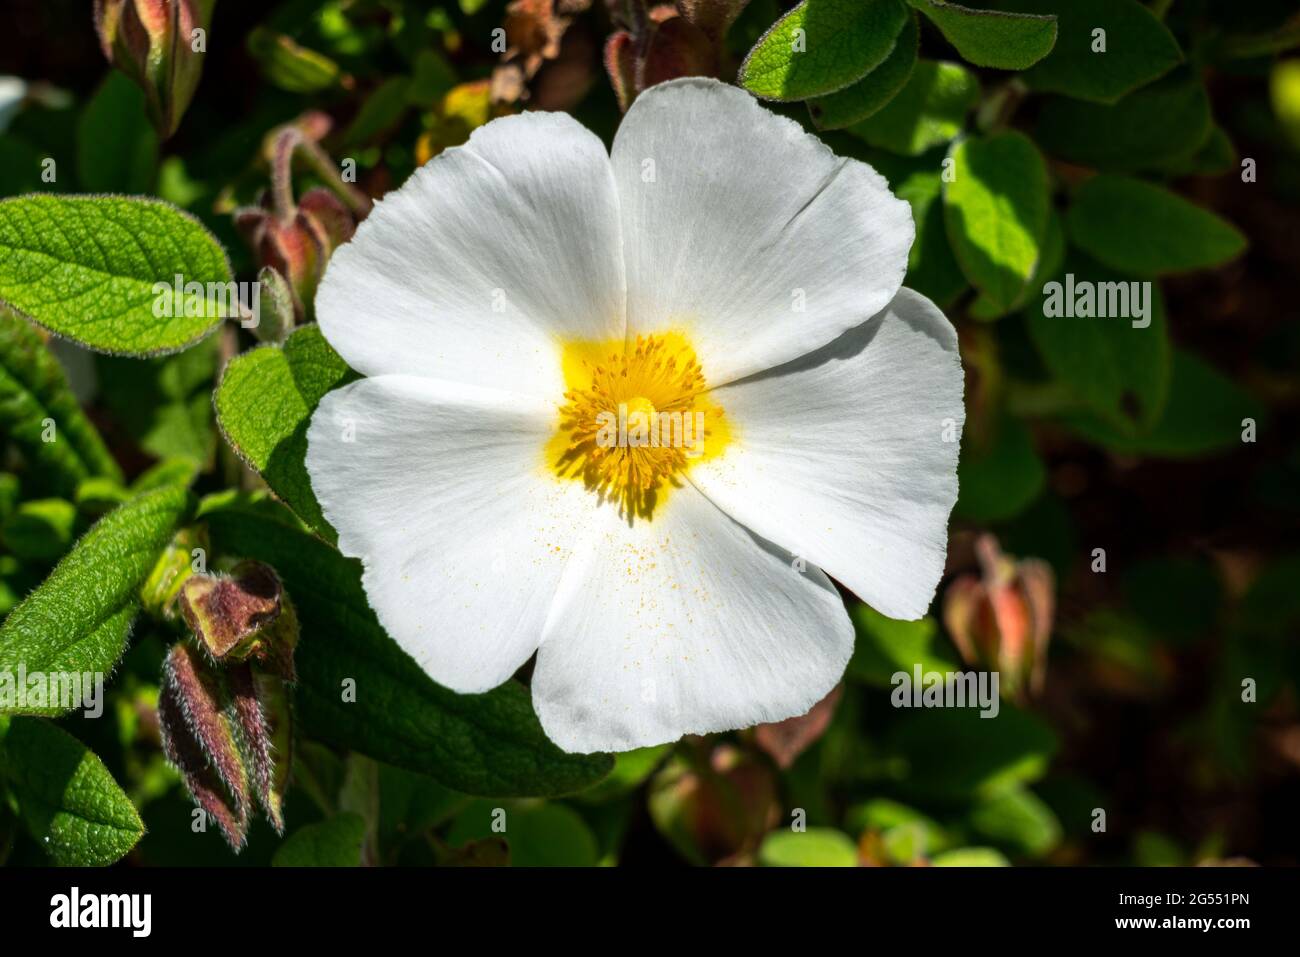 Cistus x corbariensis plante arbustive compacte à fleurs d'été avec une fleur blanche d'été communément connue sous le nom de rose rocheuse, image de stock photo Banque D'Images